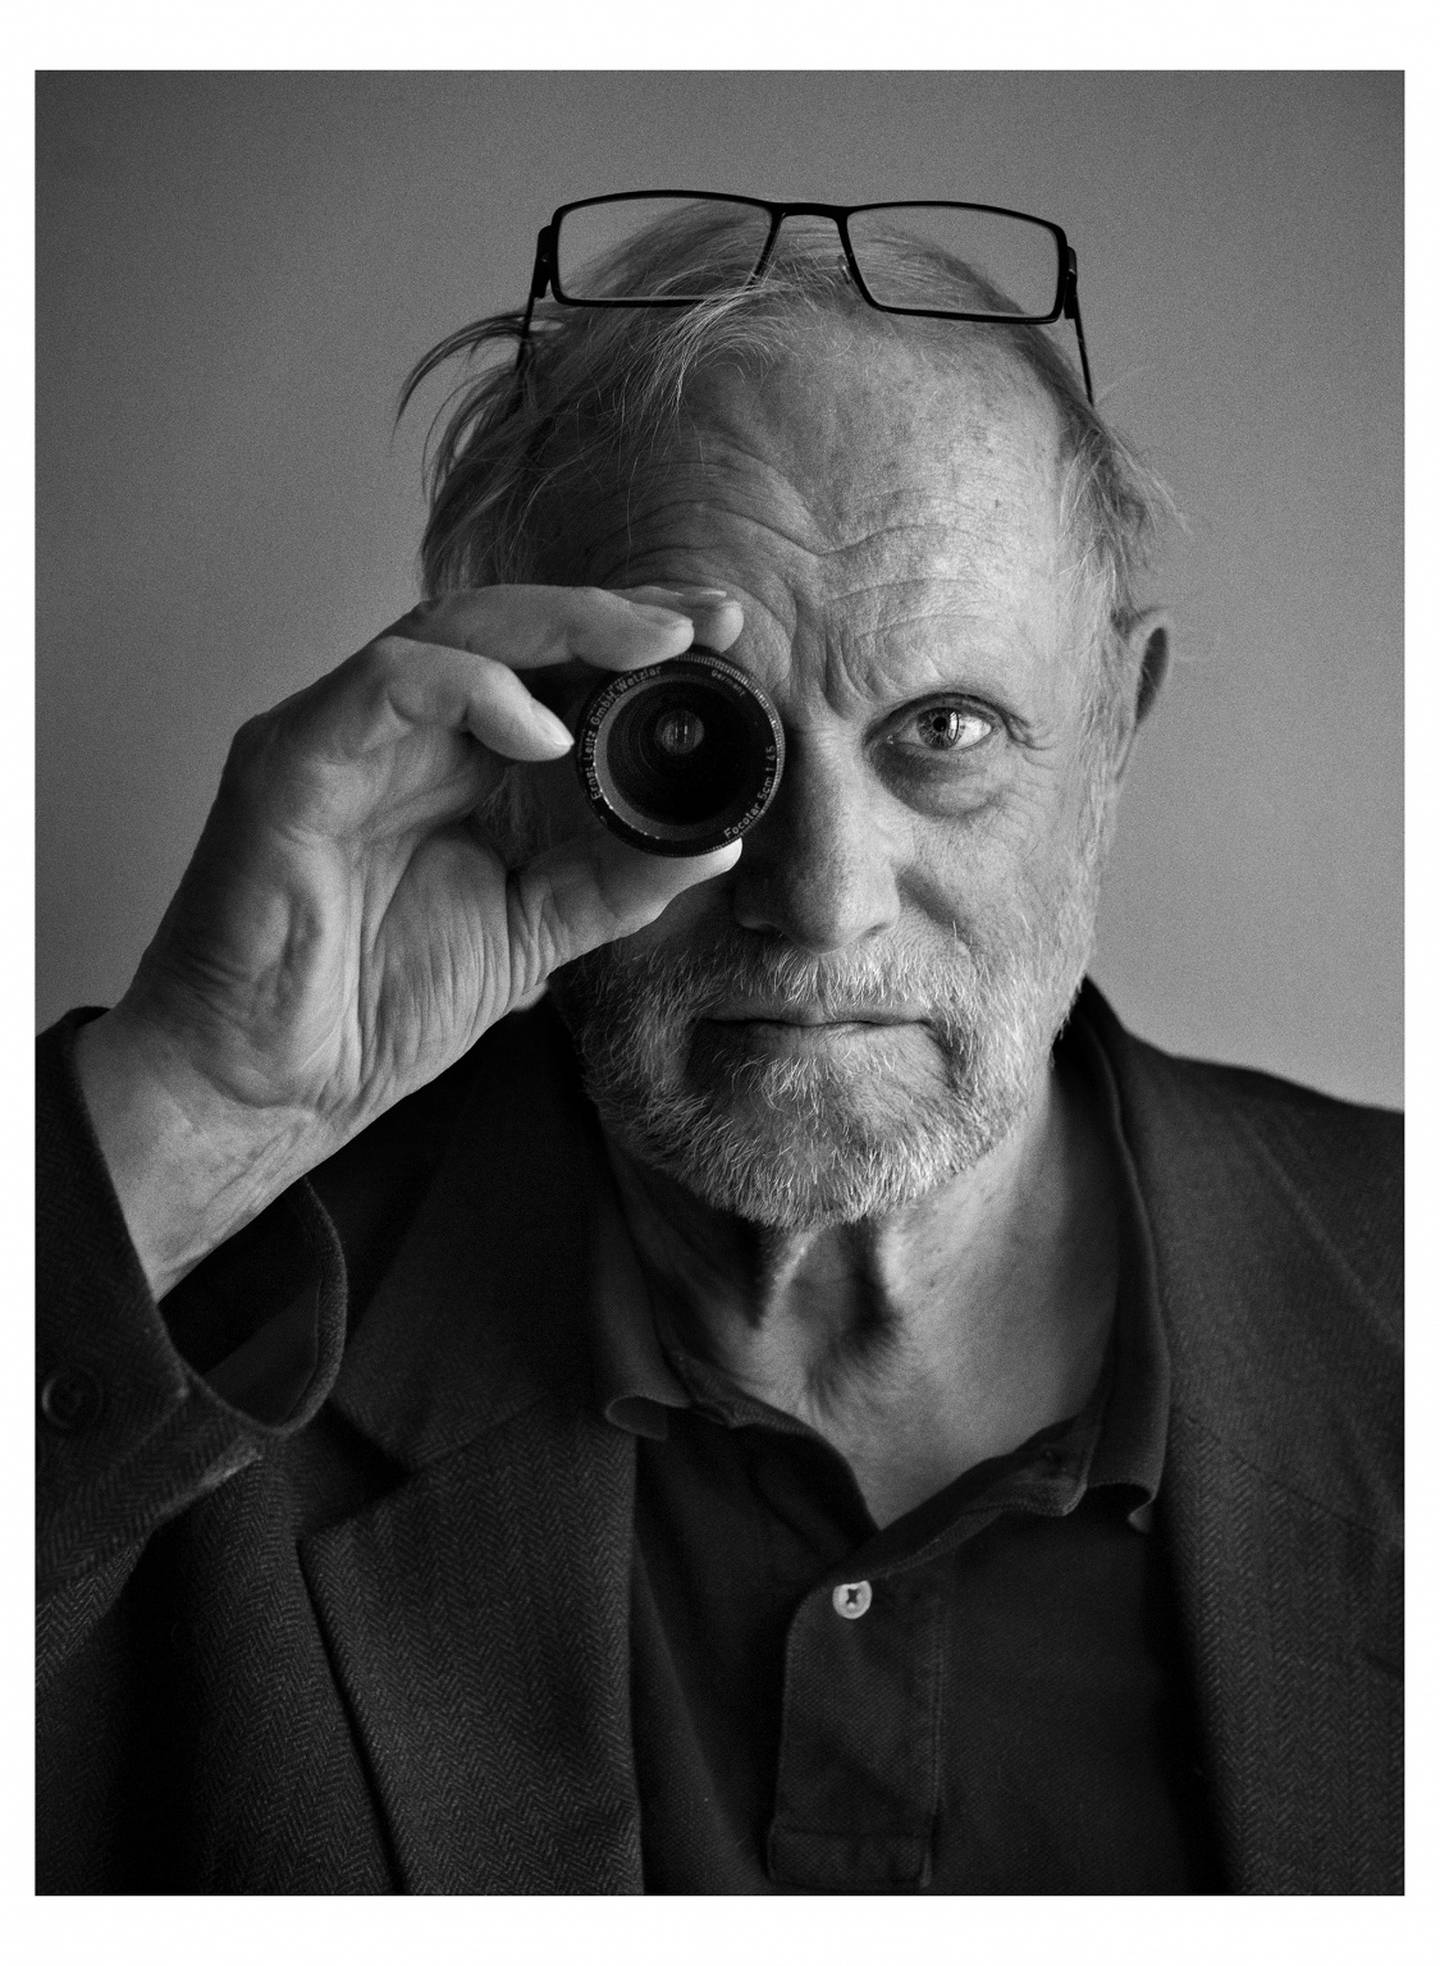 Jan Troell er den nordiske filmens Grand Old Man. 23. juli fyller han 90 år, uten at han har tenkt å gi seg av den grunn.